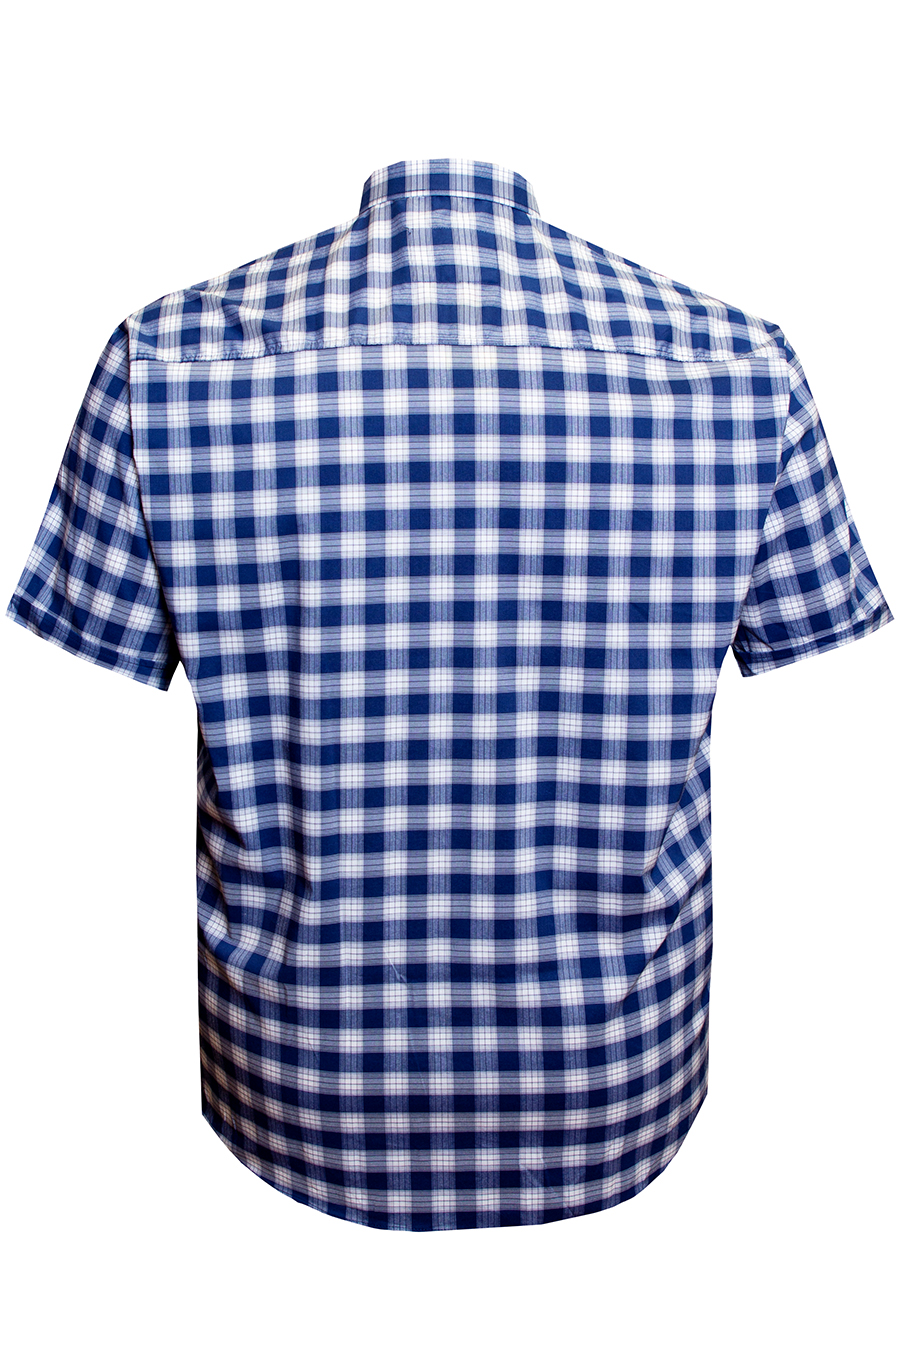 Рубашка Castelli синяя с белой клеткой большого размера